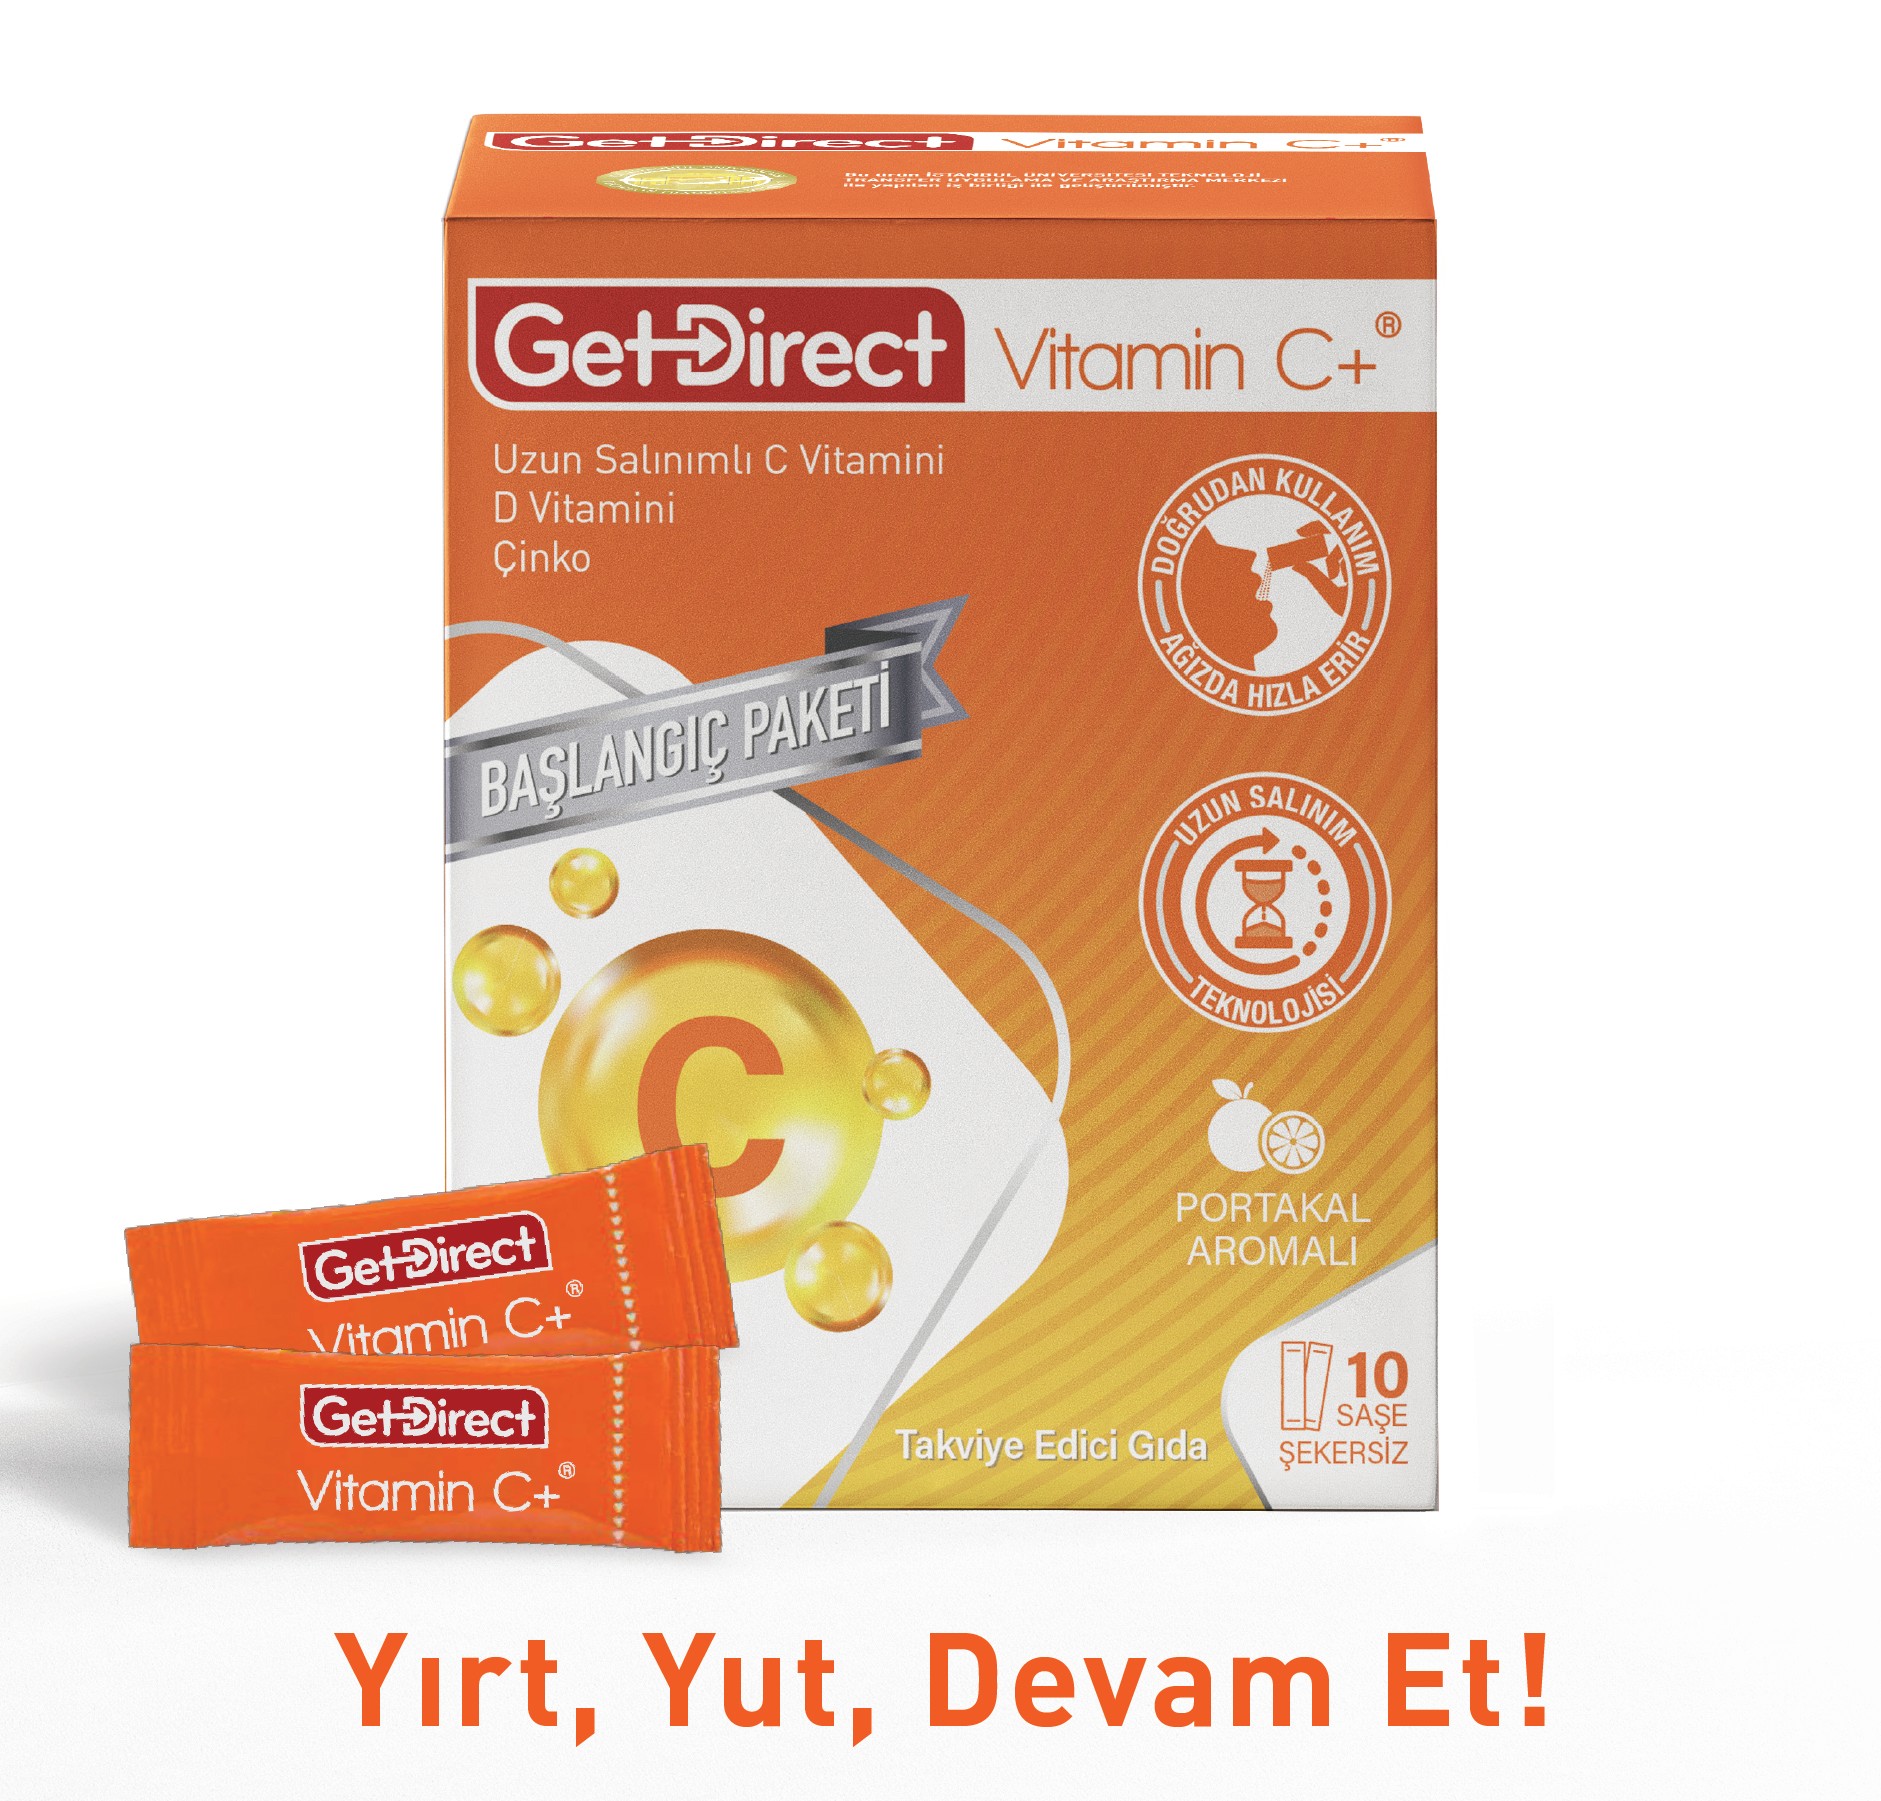 GetDirect Vitamin C+ Başlangıç Paketi Uzun Salınımlı C Vitamini, D Vitamini ve Çinko  İçeren Takviye Edici Gıda